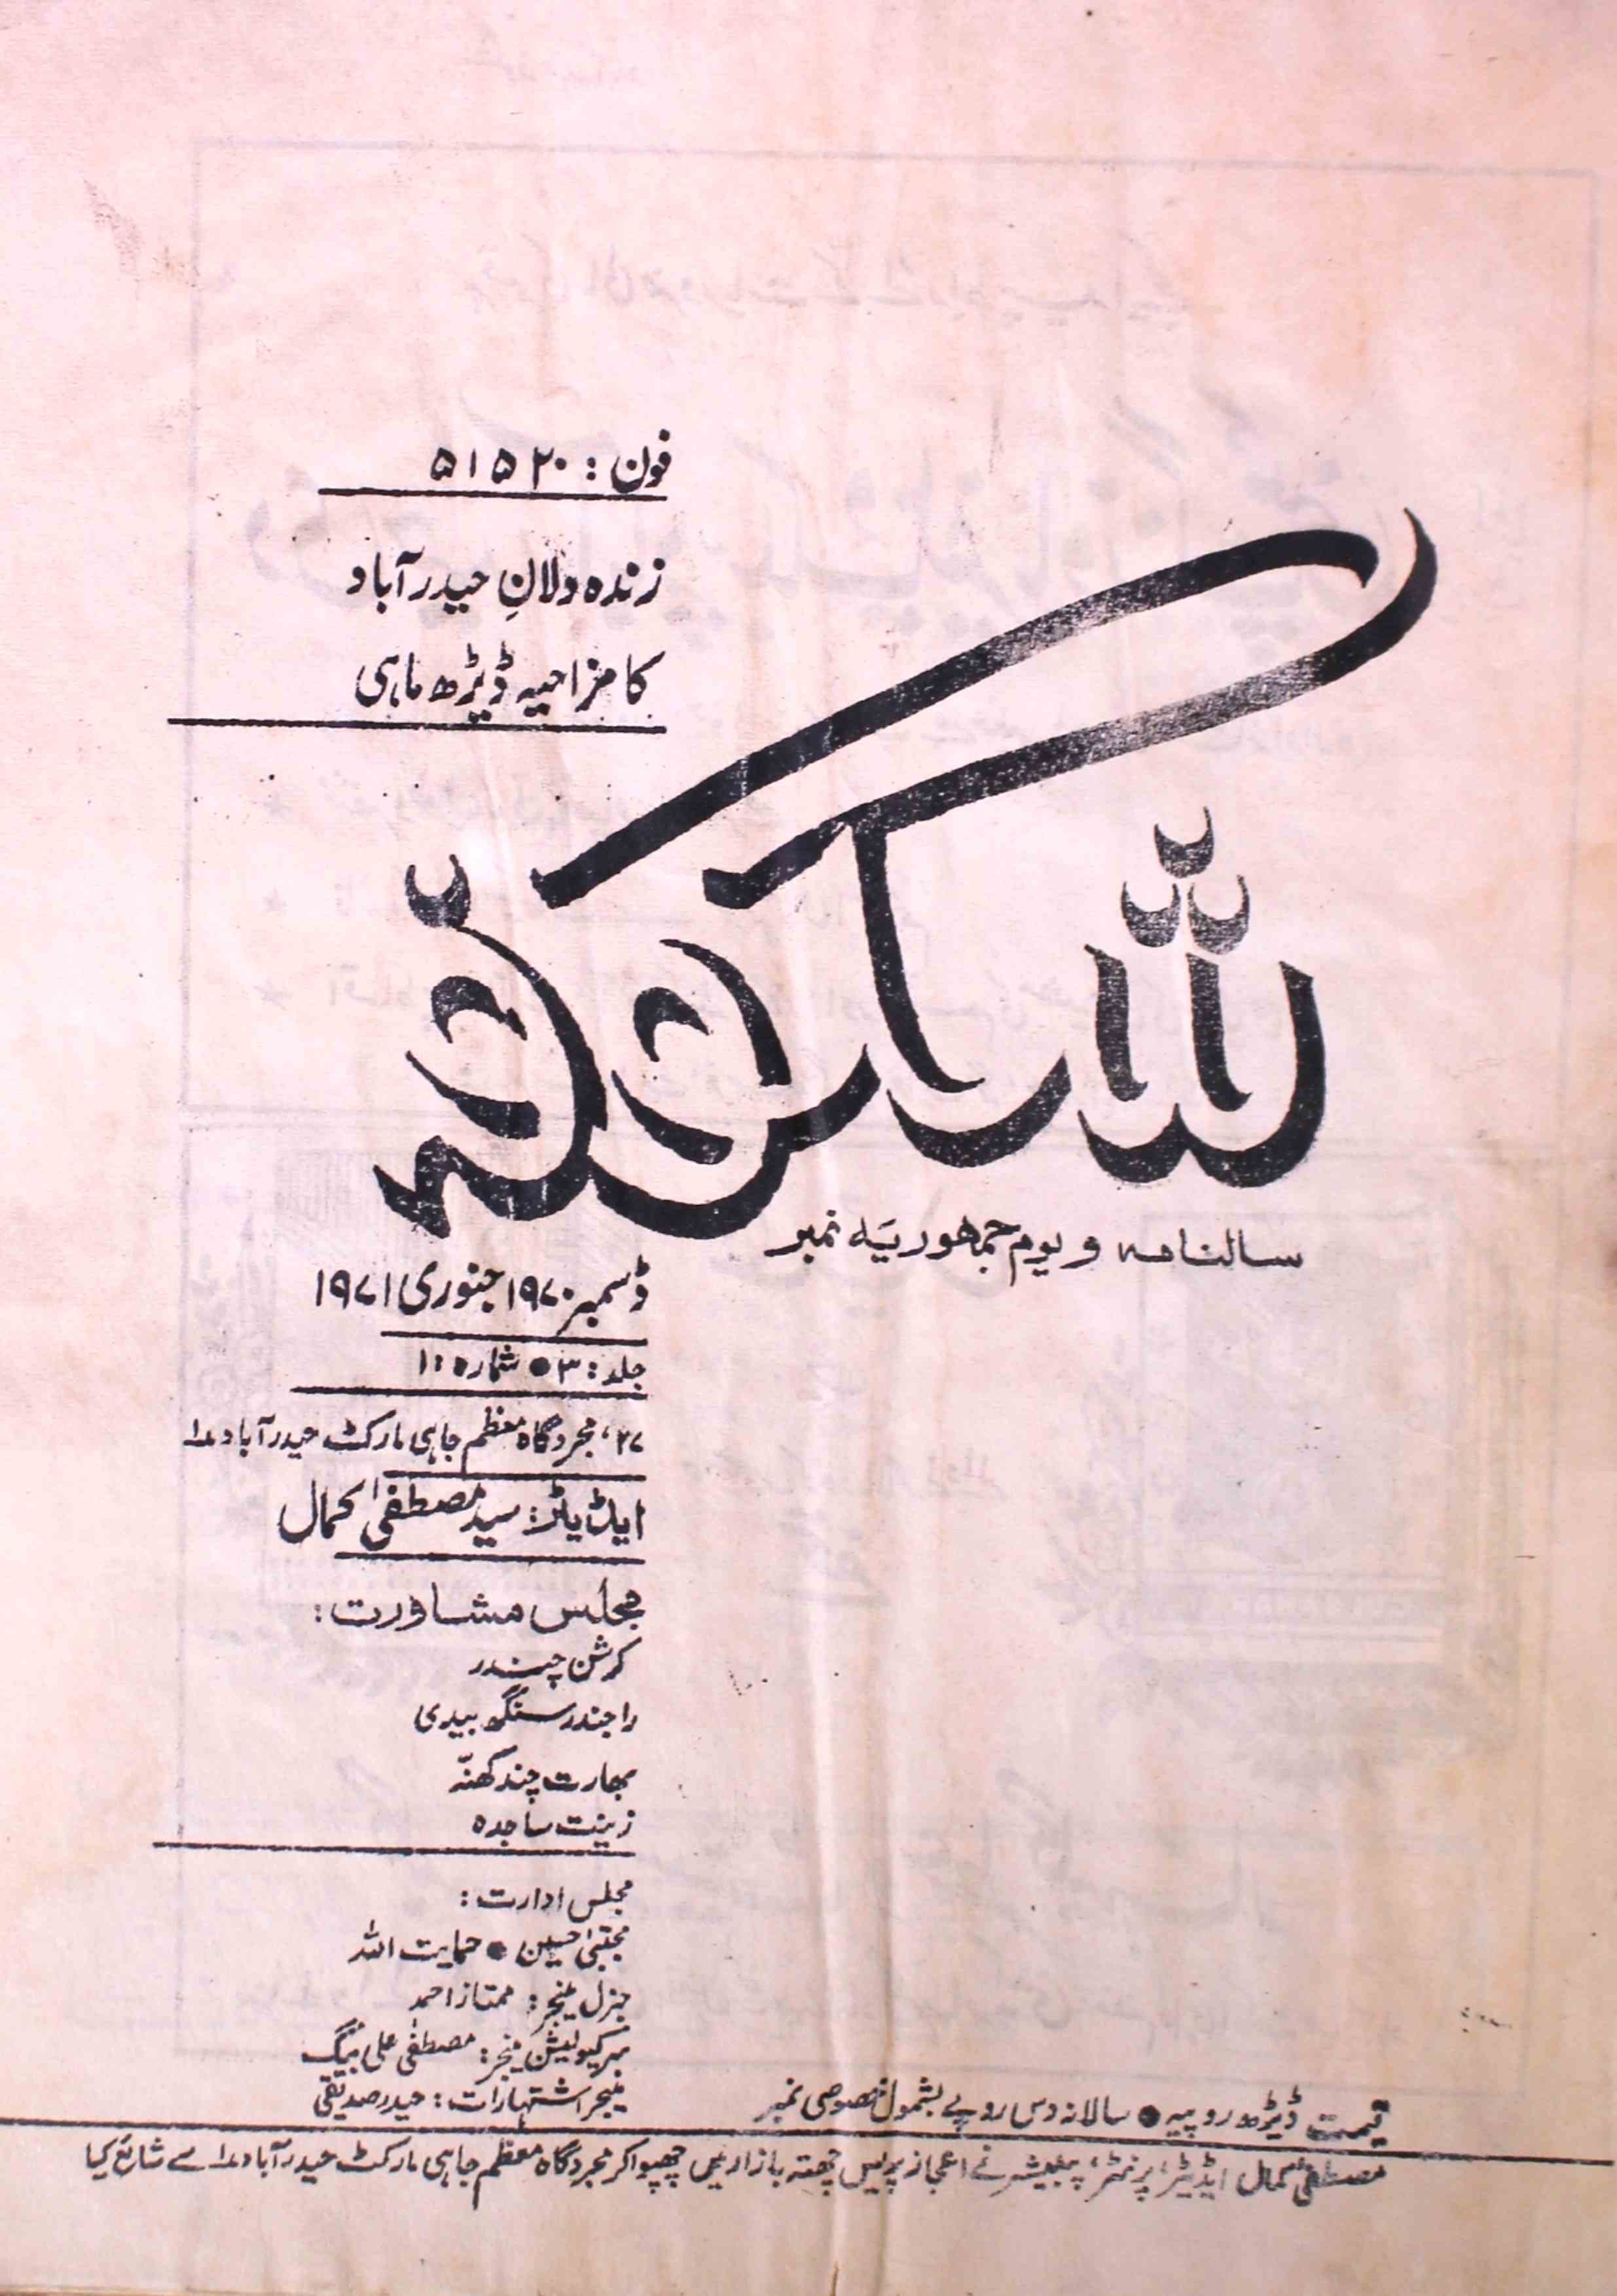 shagoofa-shumaara-number-001-mustafa-kamal-hashmi-magazines